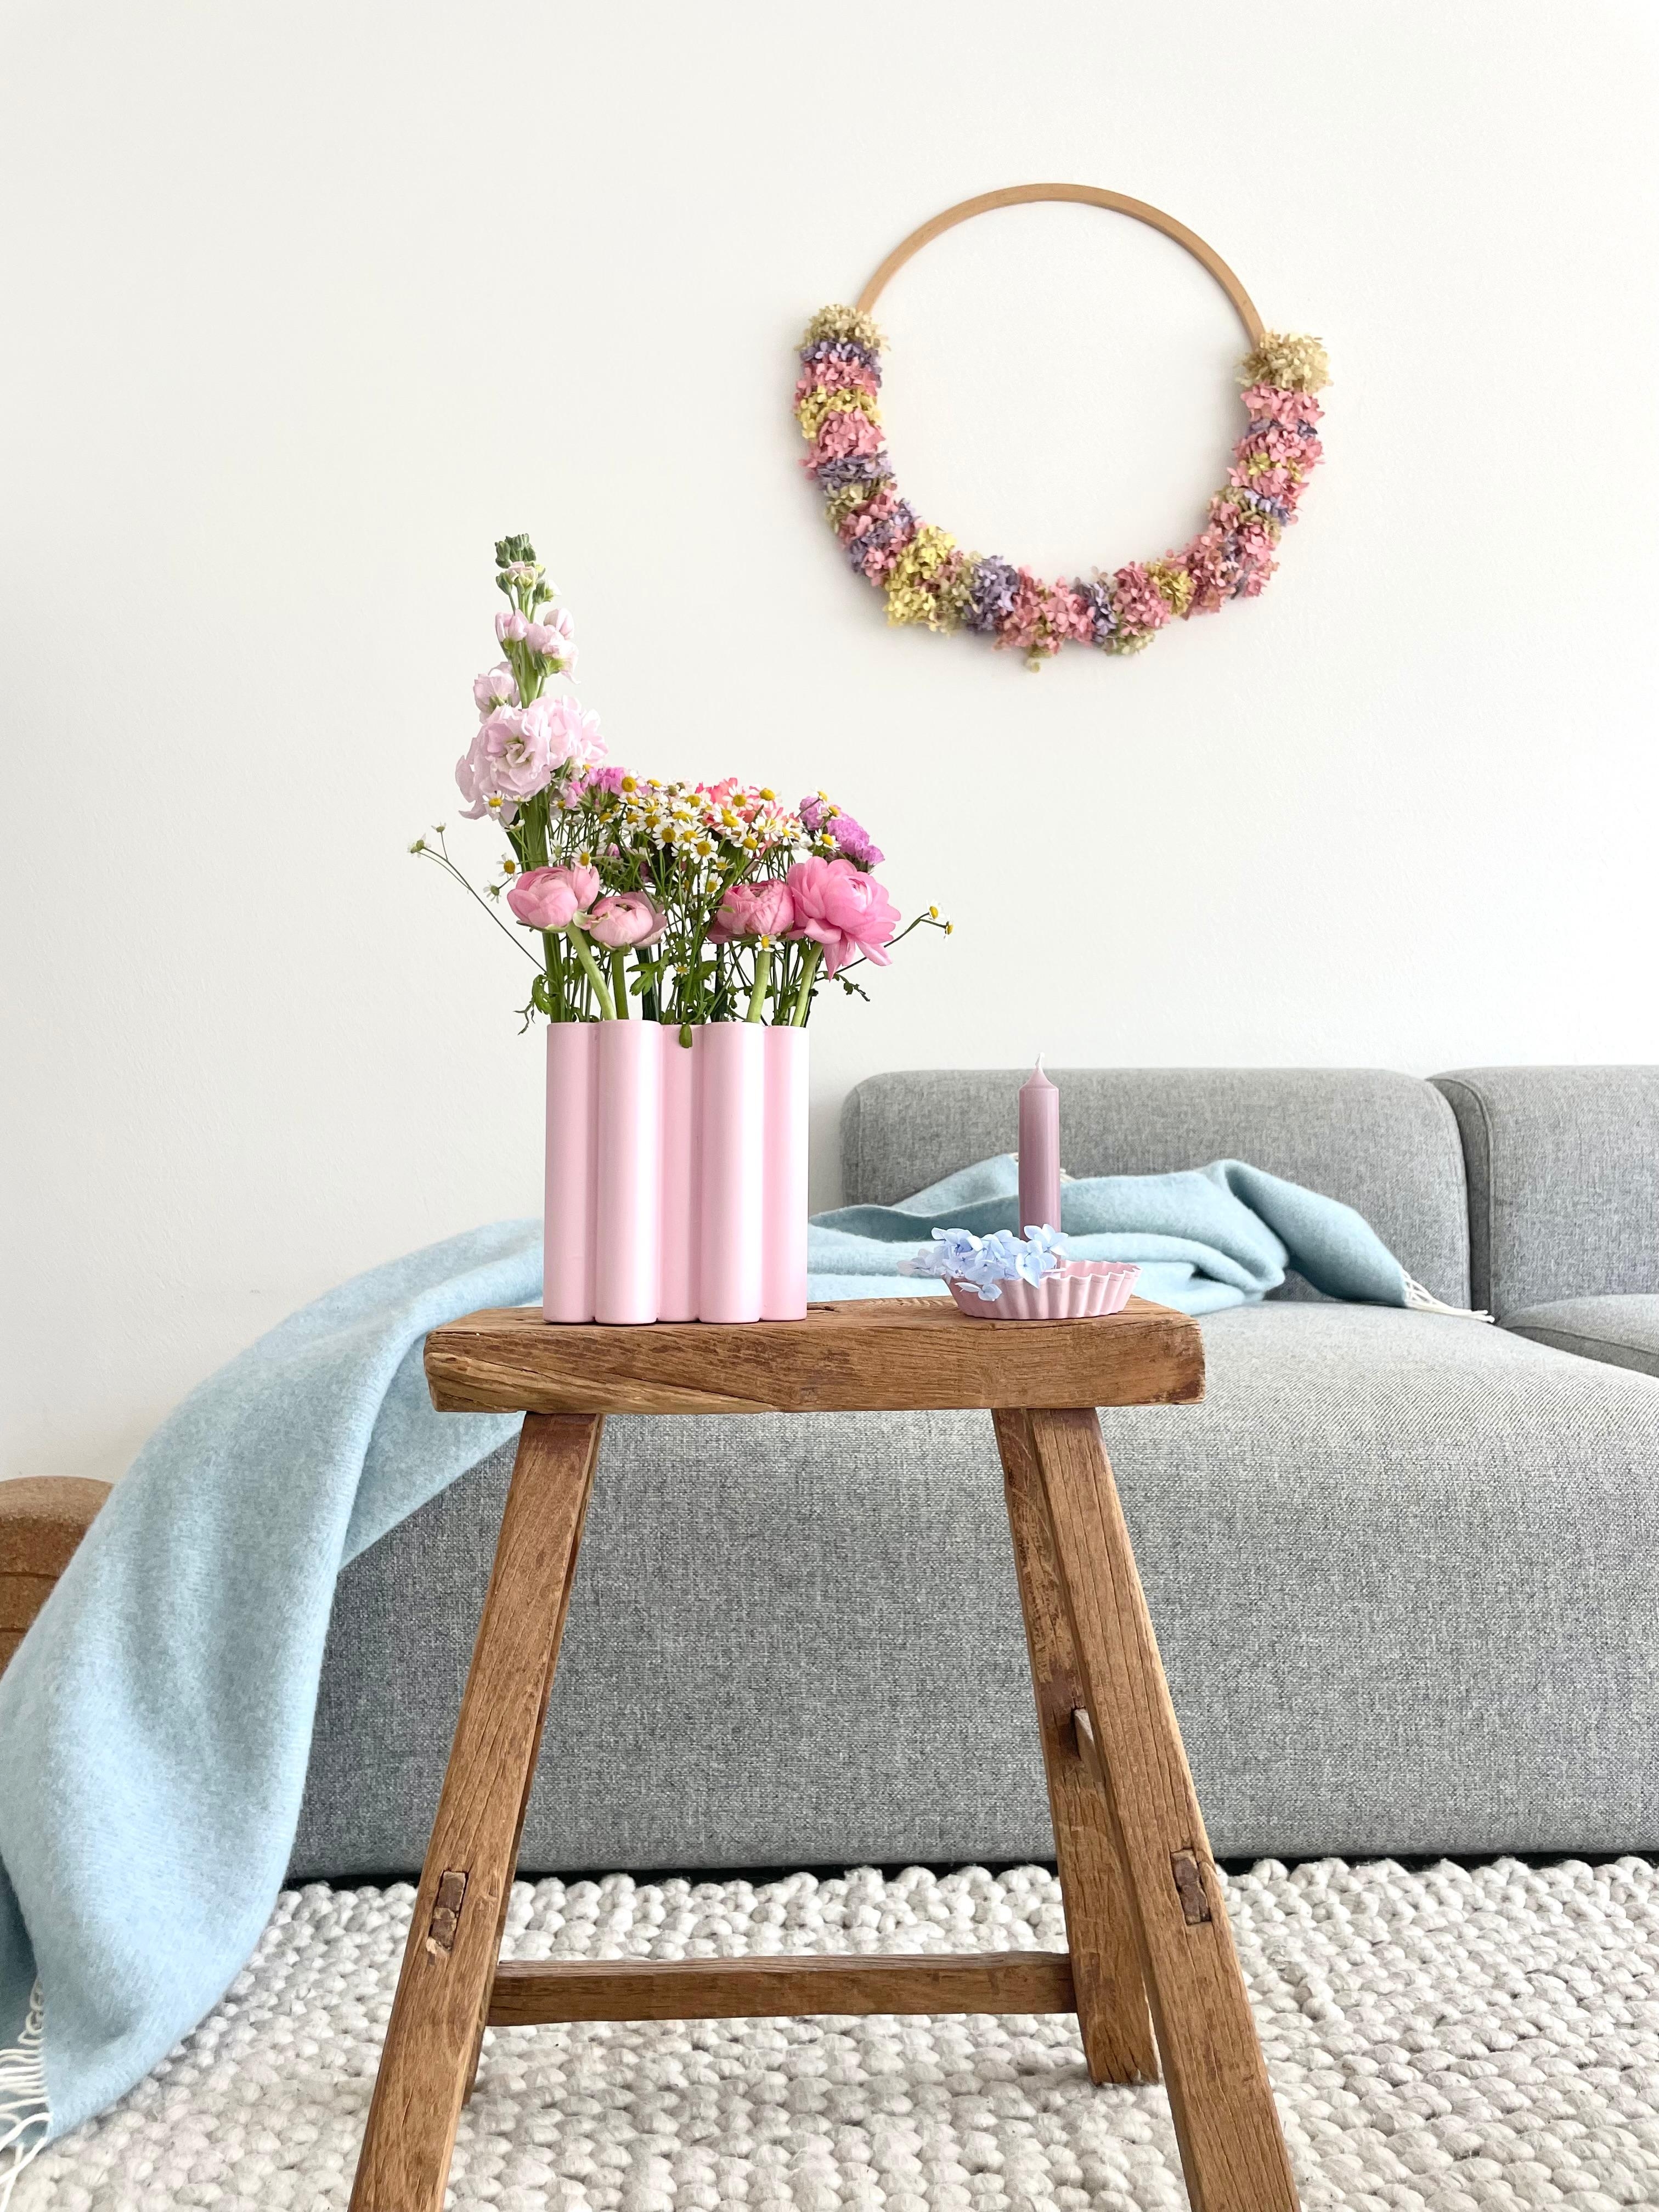 Meine erste #diyvase ;)

#vase #blumen #flowers #wohnzimmer #frühling #livingroom #couch 